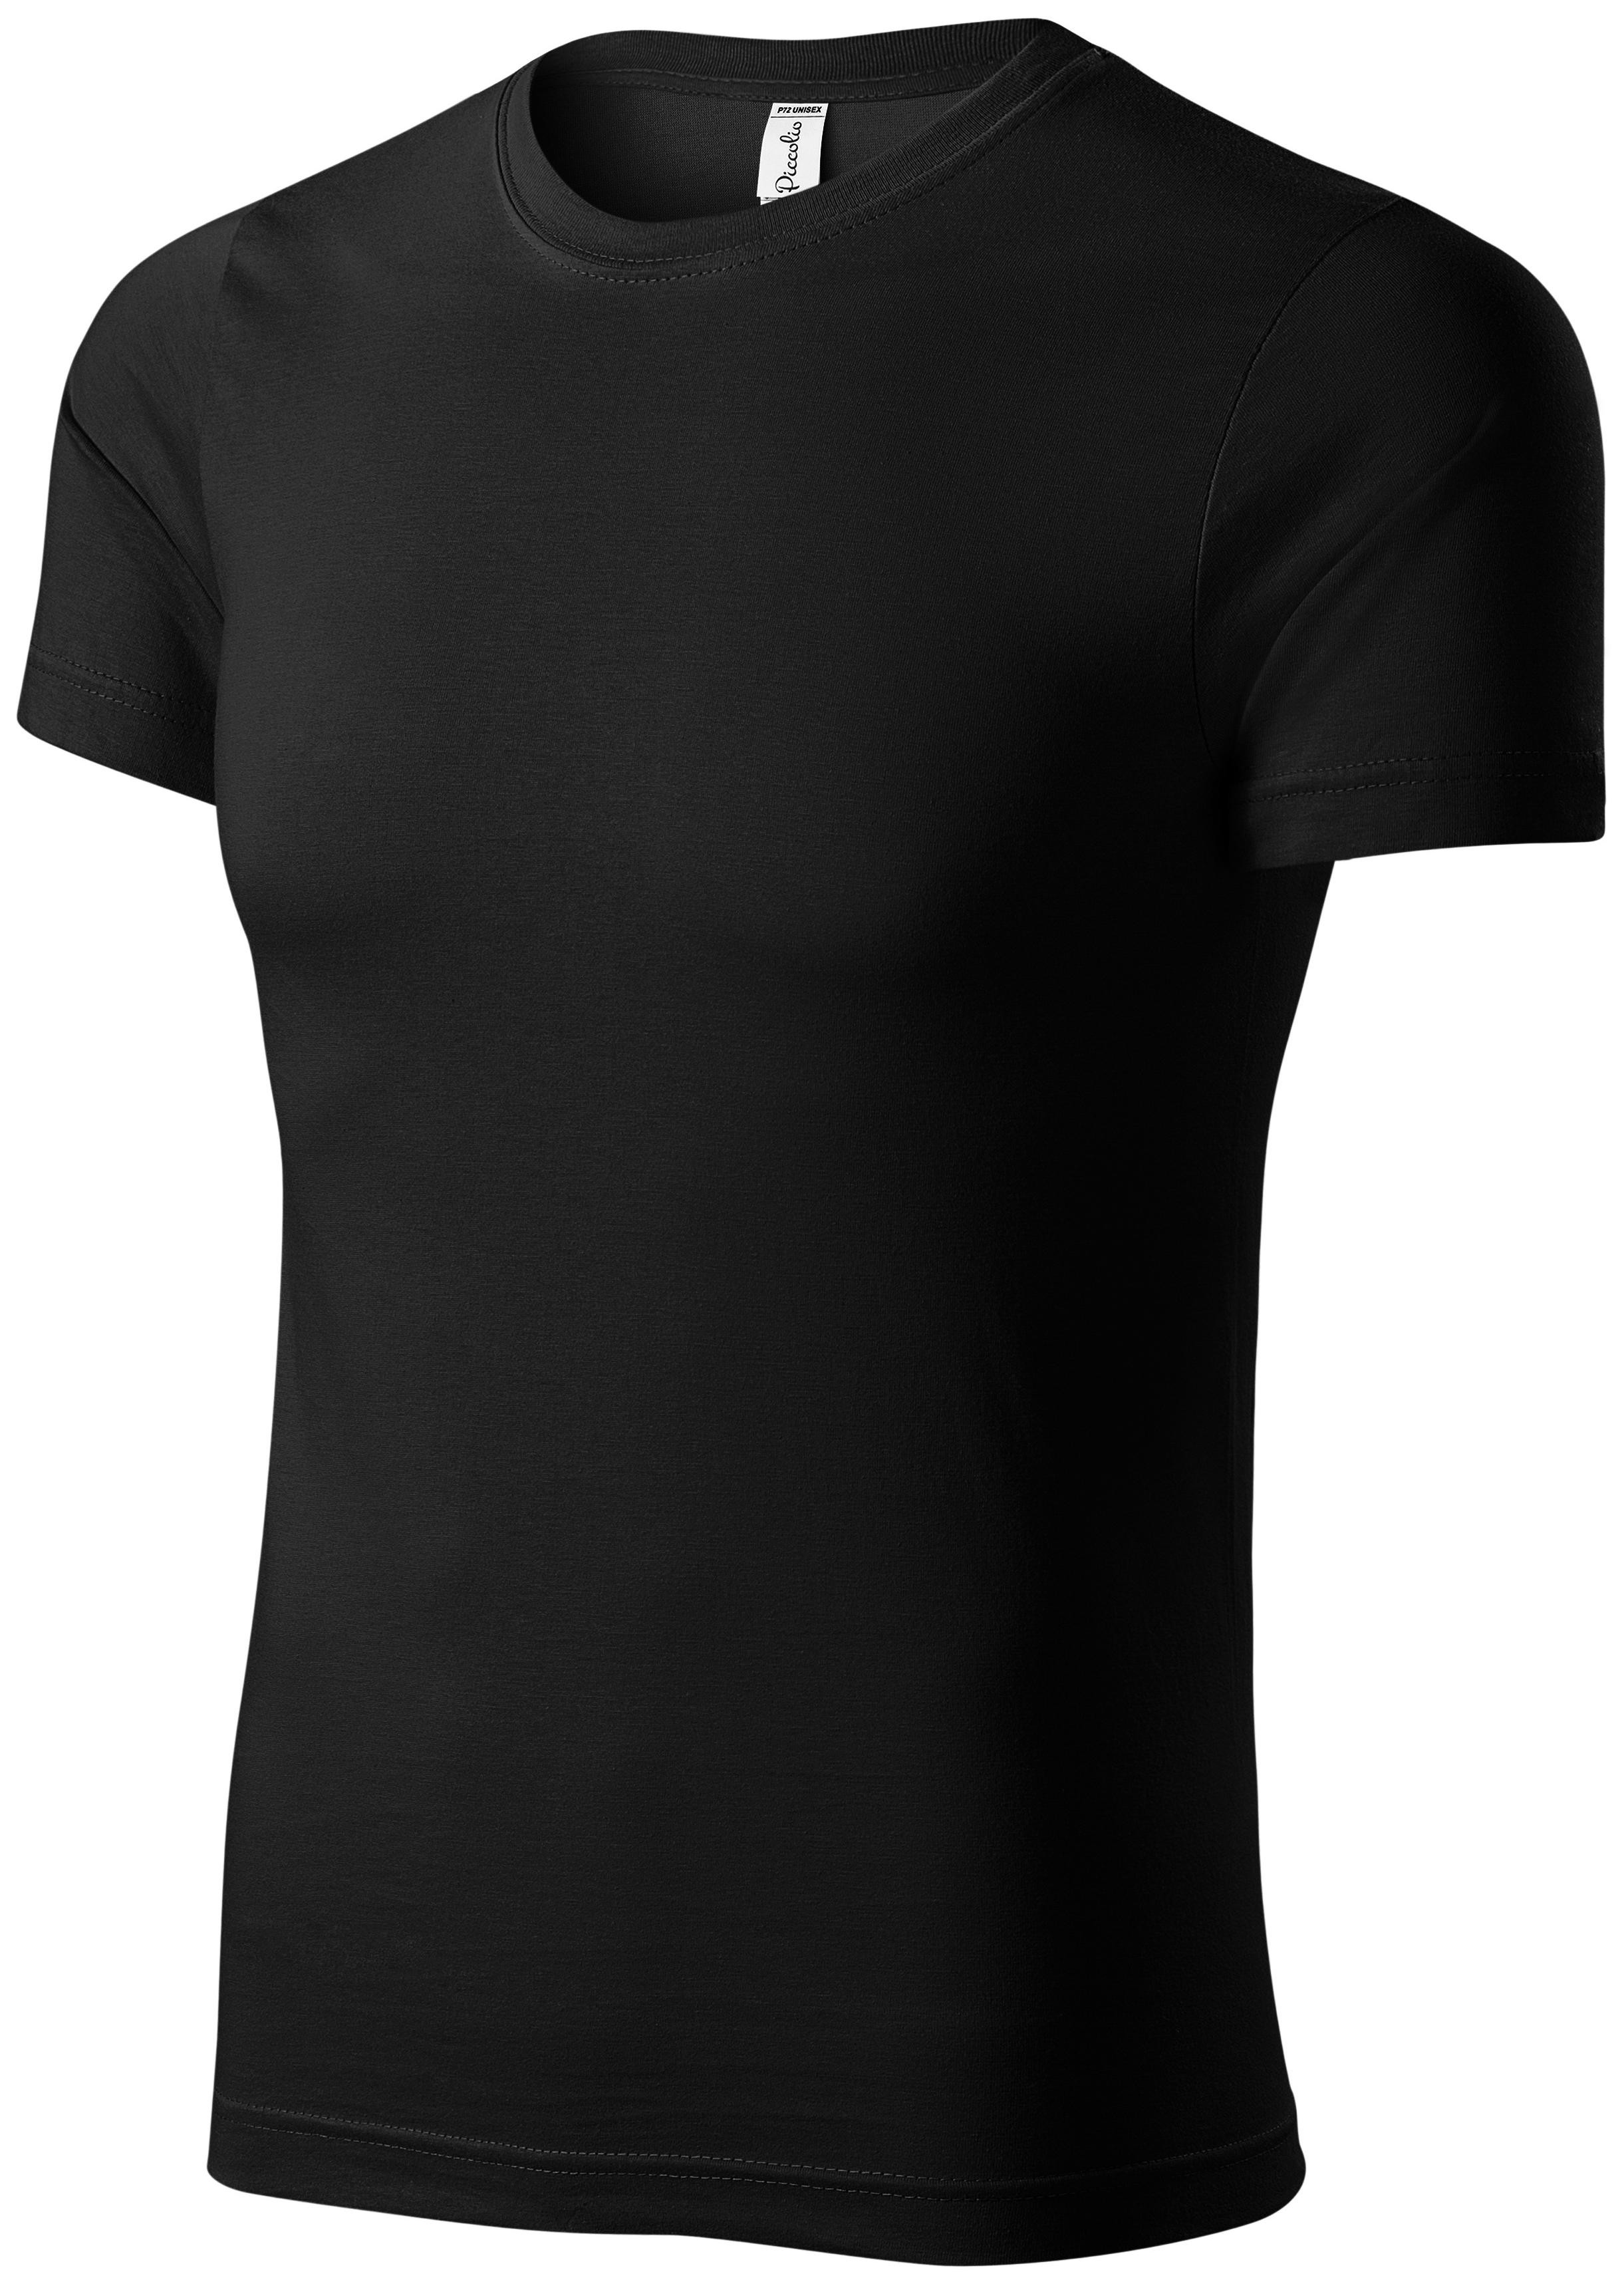 Detské ľahké tričko, čierna, 158cm / 12rokov